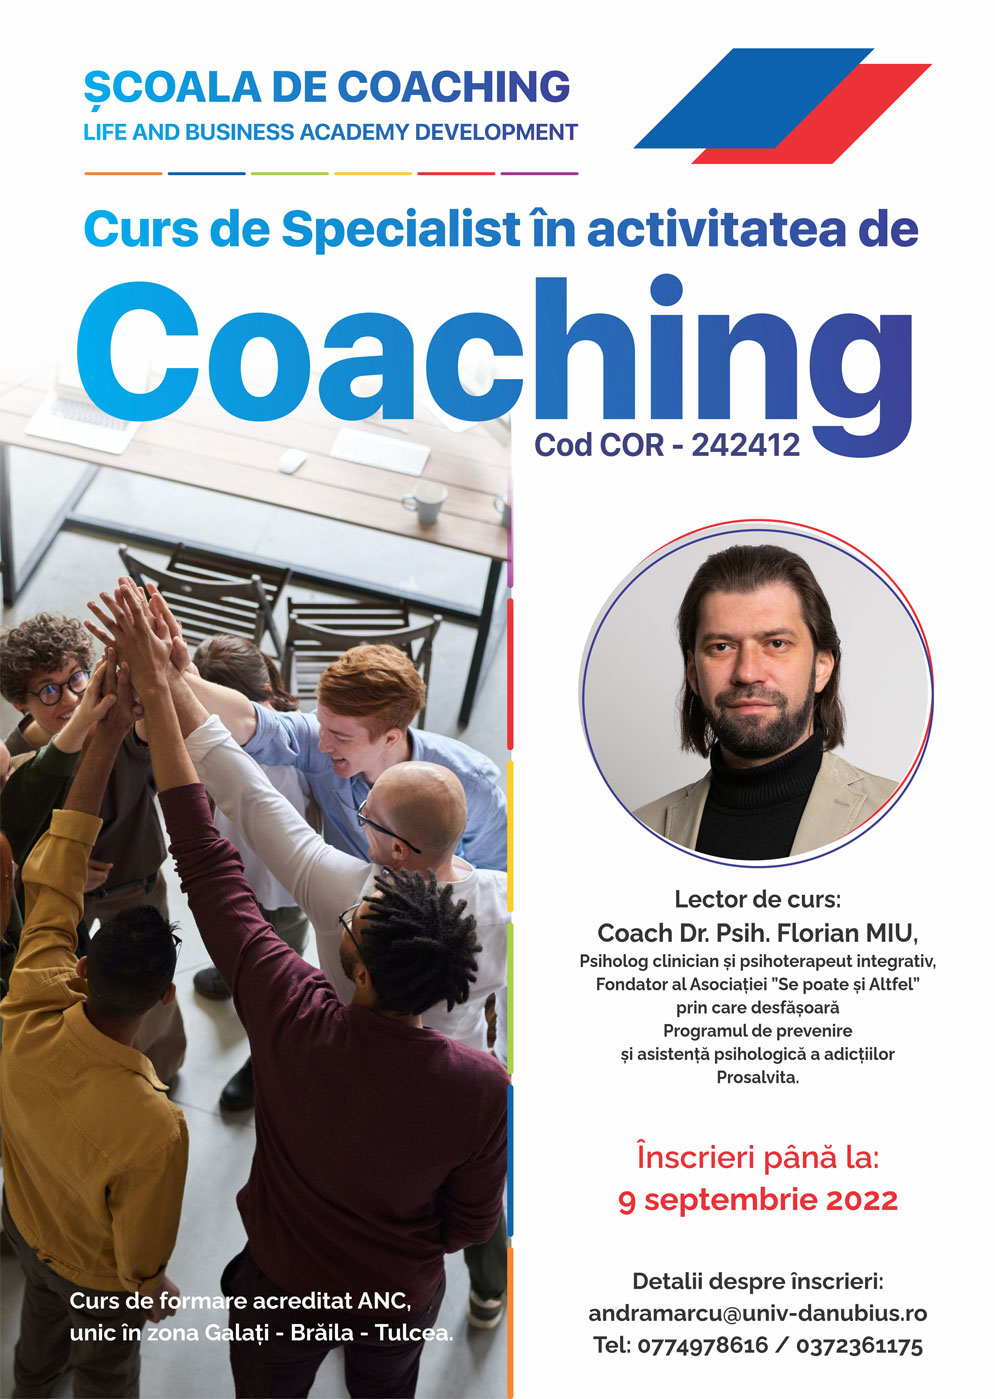 Un nou curs de formare - Specialist în activitatea de Coaching - cod COR 242412